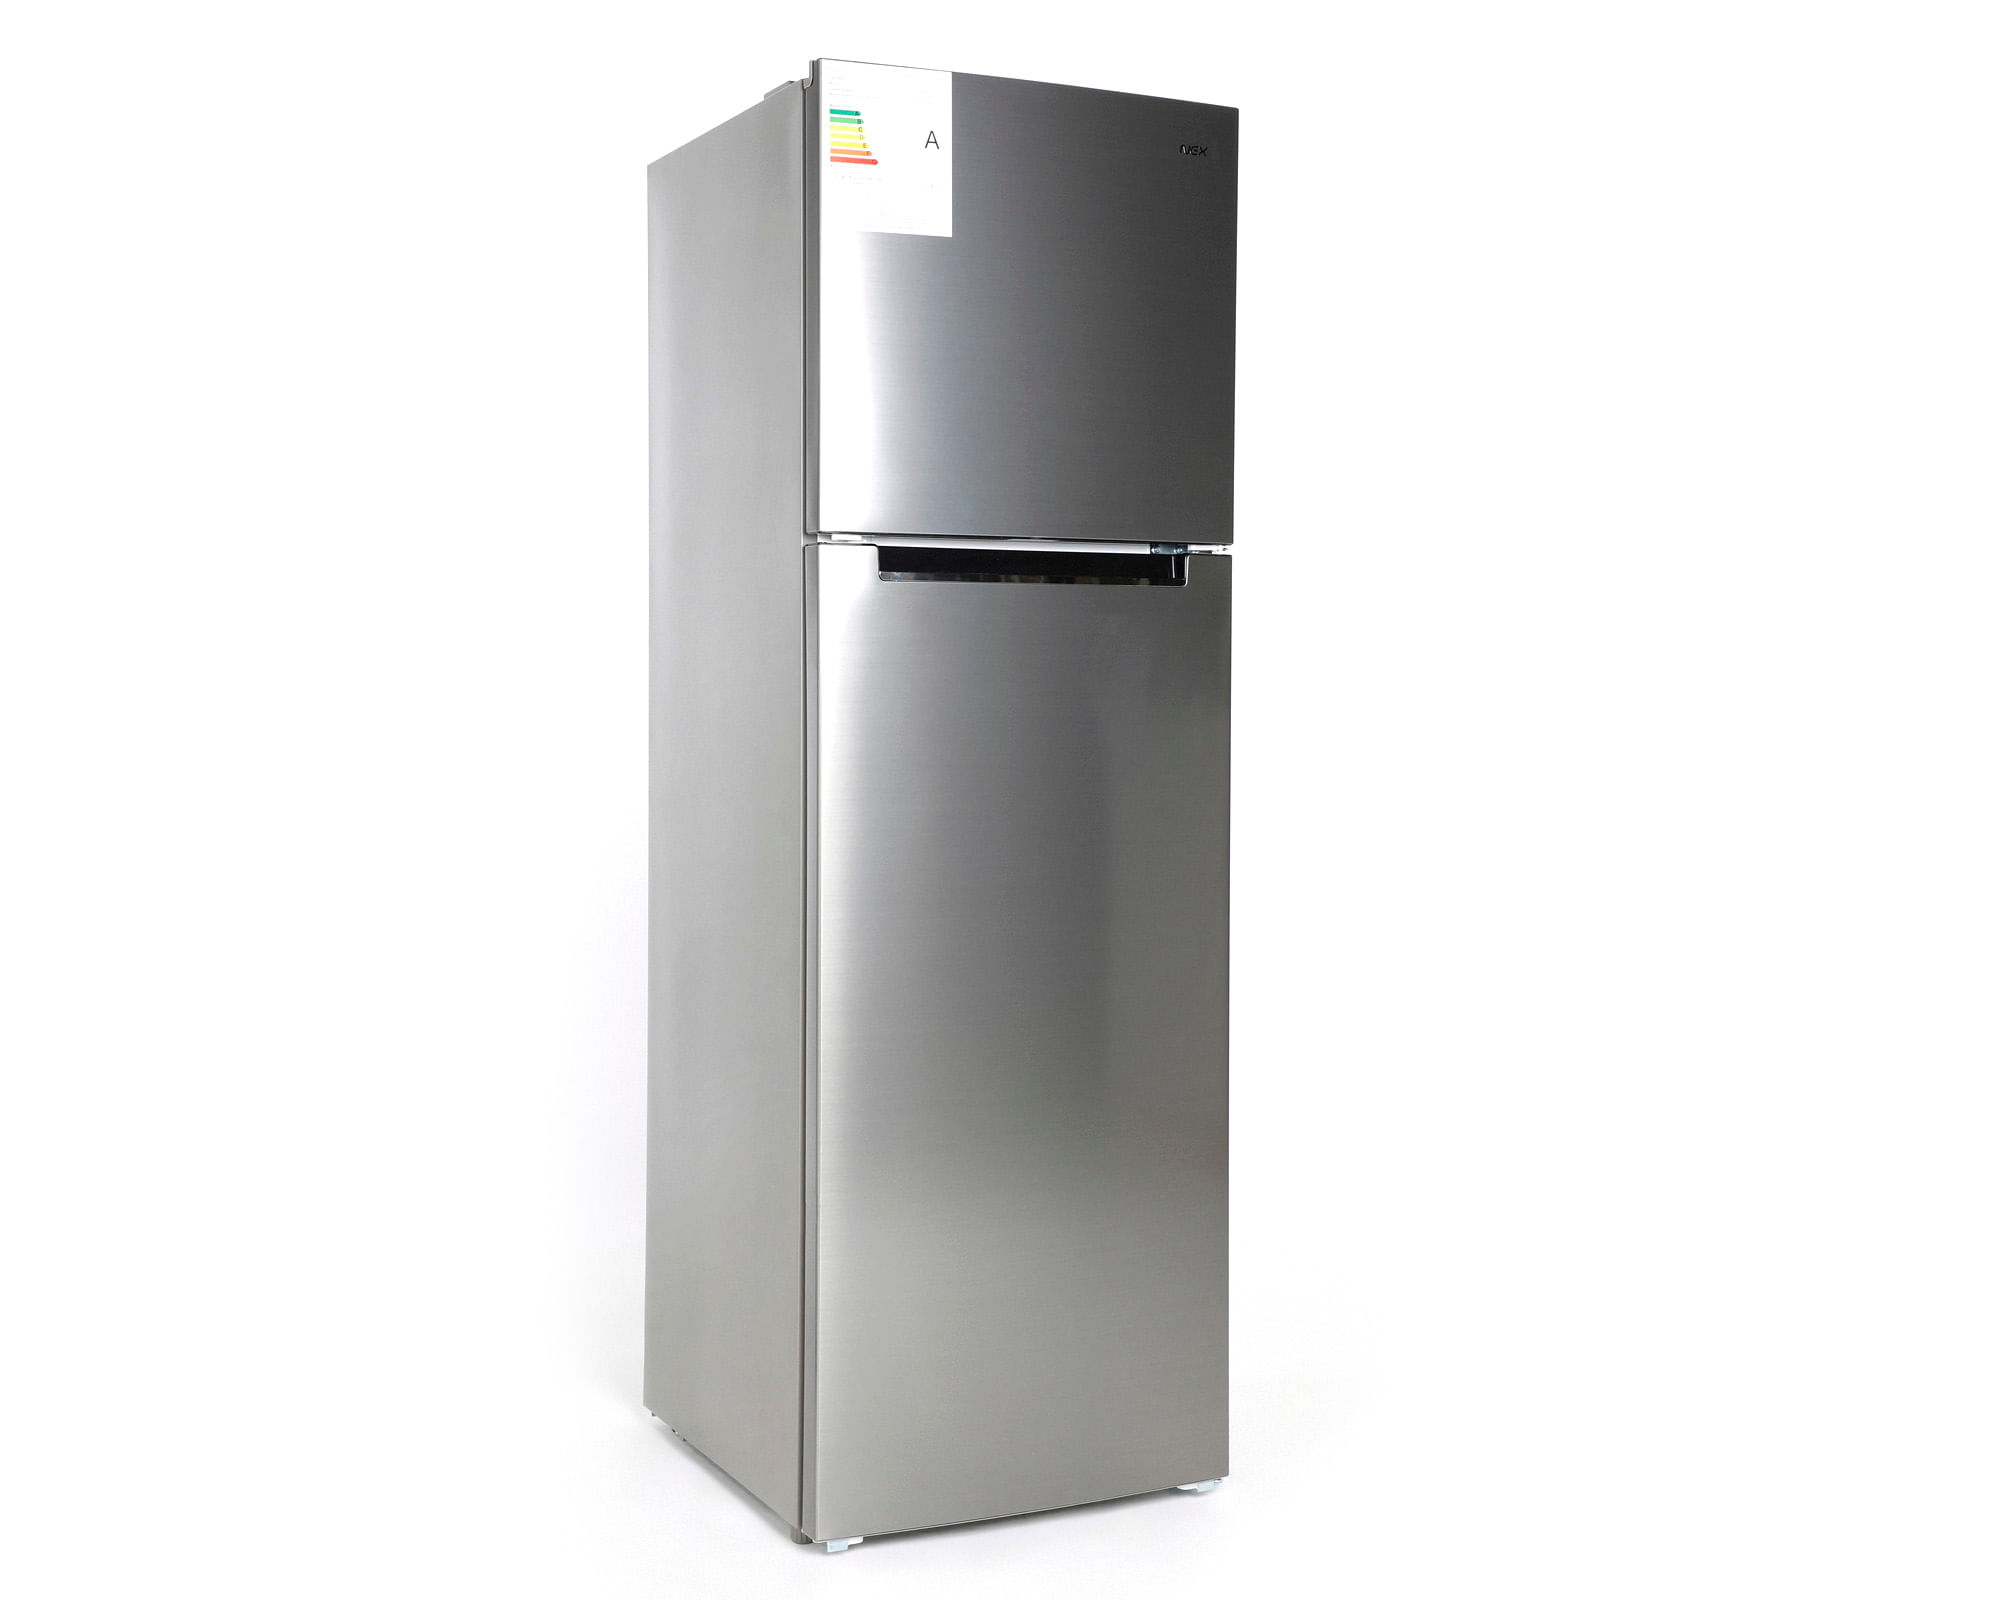 Refrigerador Combi No Frost 265 Litros RFC003OI20 - Refrigeradores